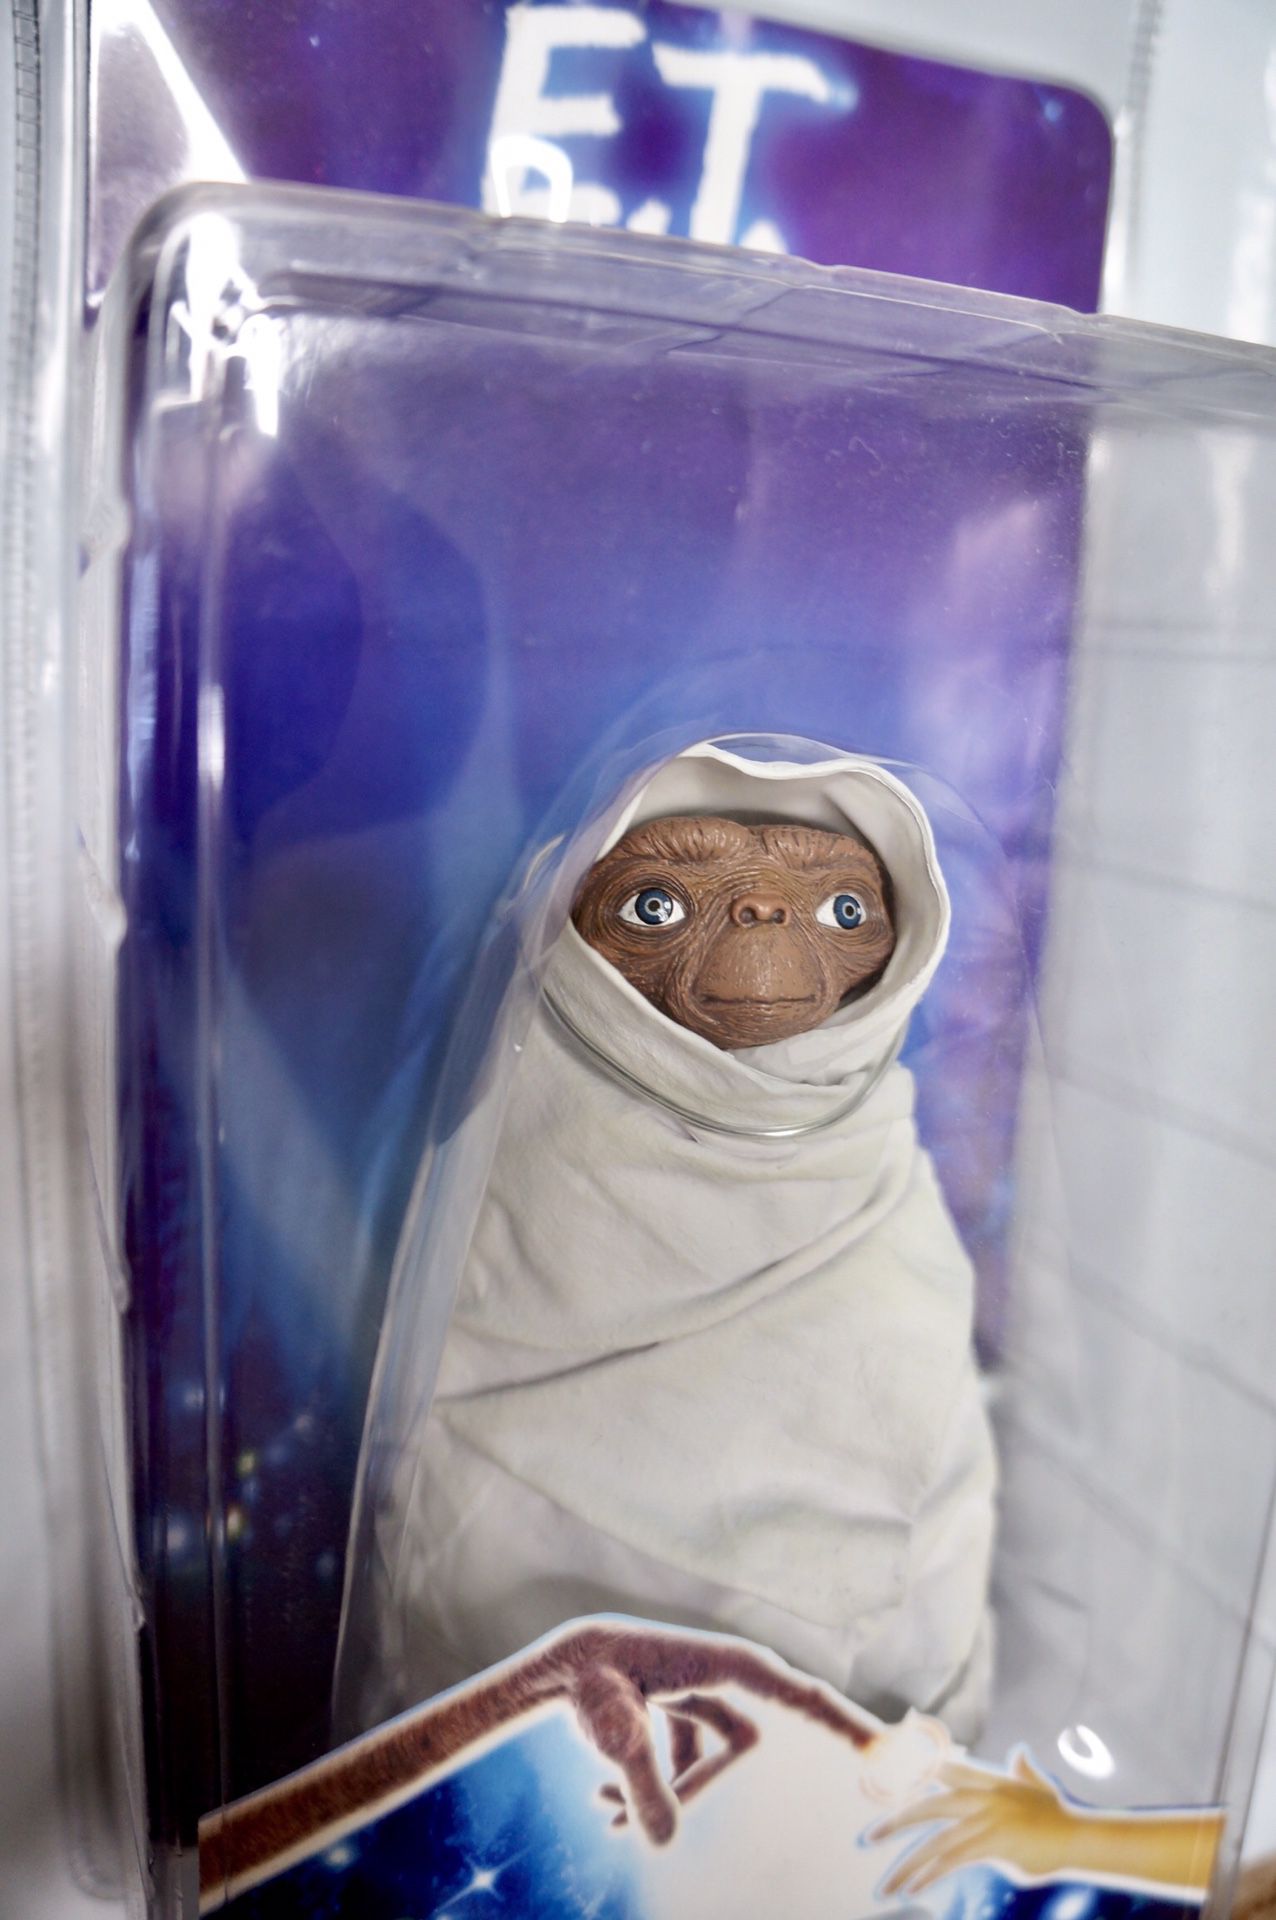 E.T. Action figure